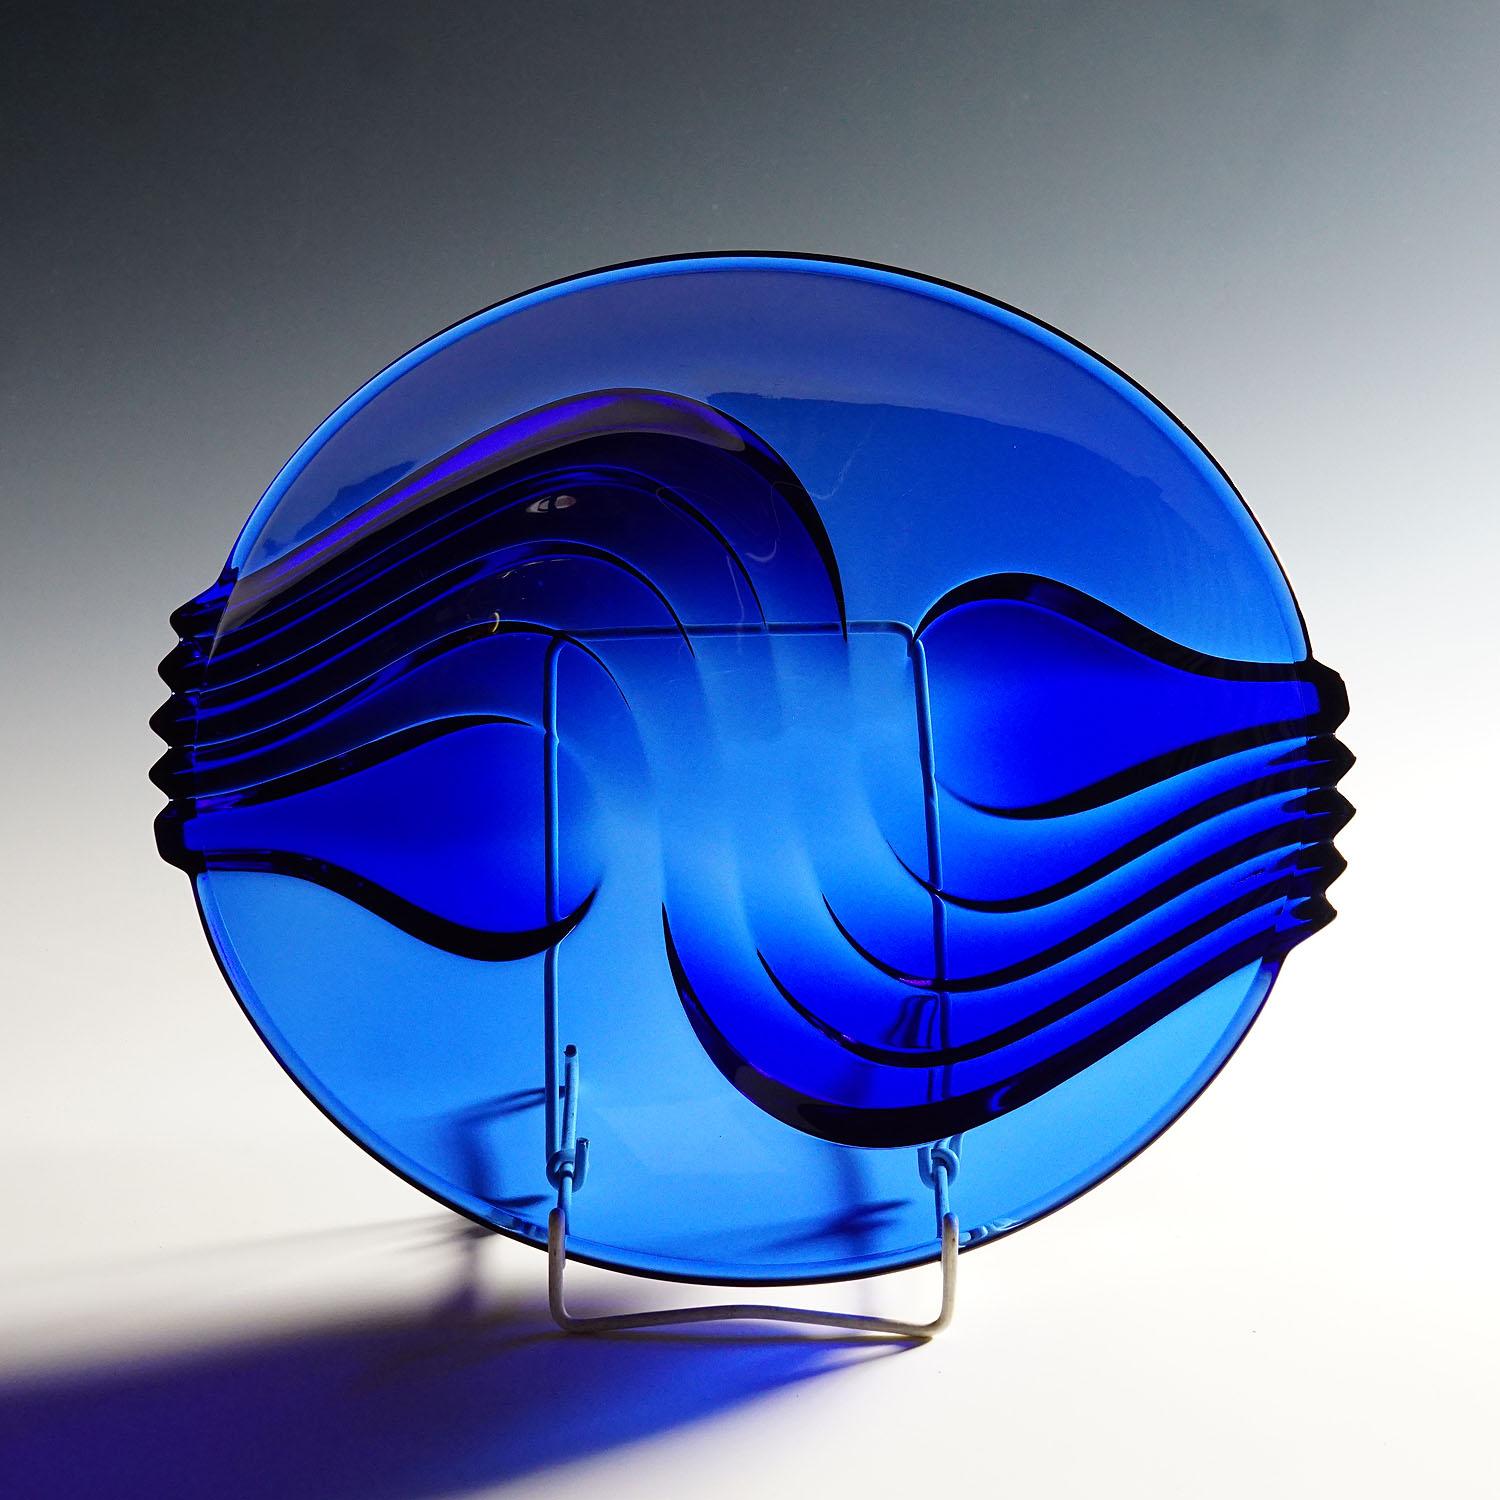 Vintage Kobaltblauer Glasteller von Arcoroc, Frankreich

Eine große Pressglasplatte aus kobaltblauem Glas. Hergestellt von Arcoroc, Frankreich, Ende des 20. Jahrhunderts. Die Schale hat ein tolles Dekor mit wellenförmigen Linien. Gekennzeichnet mit